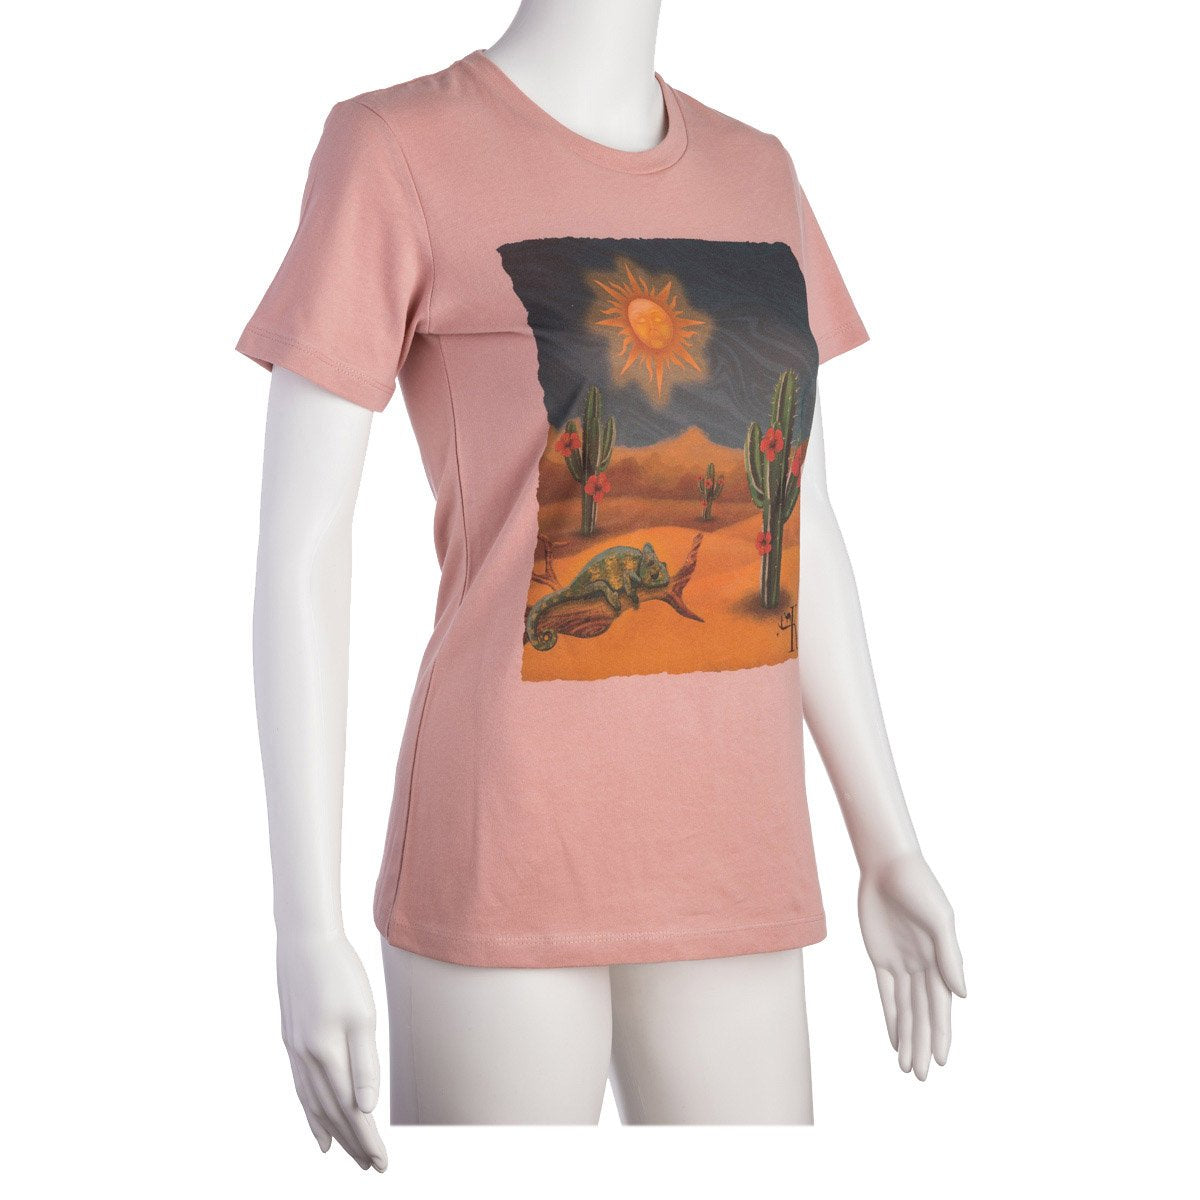 Tee Shirt - Sacred Desert